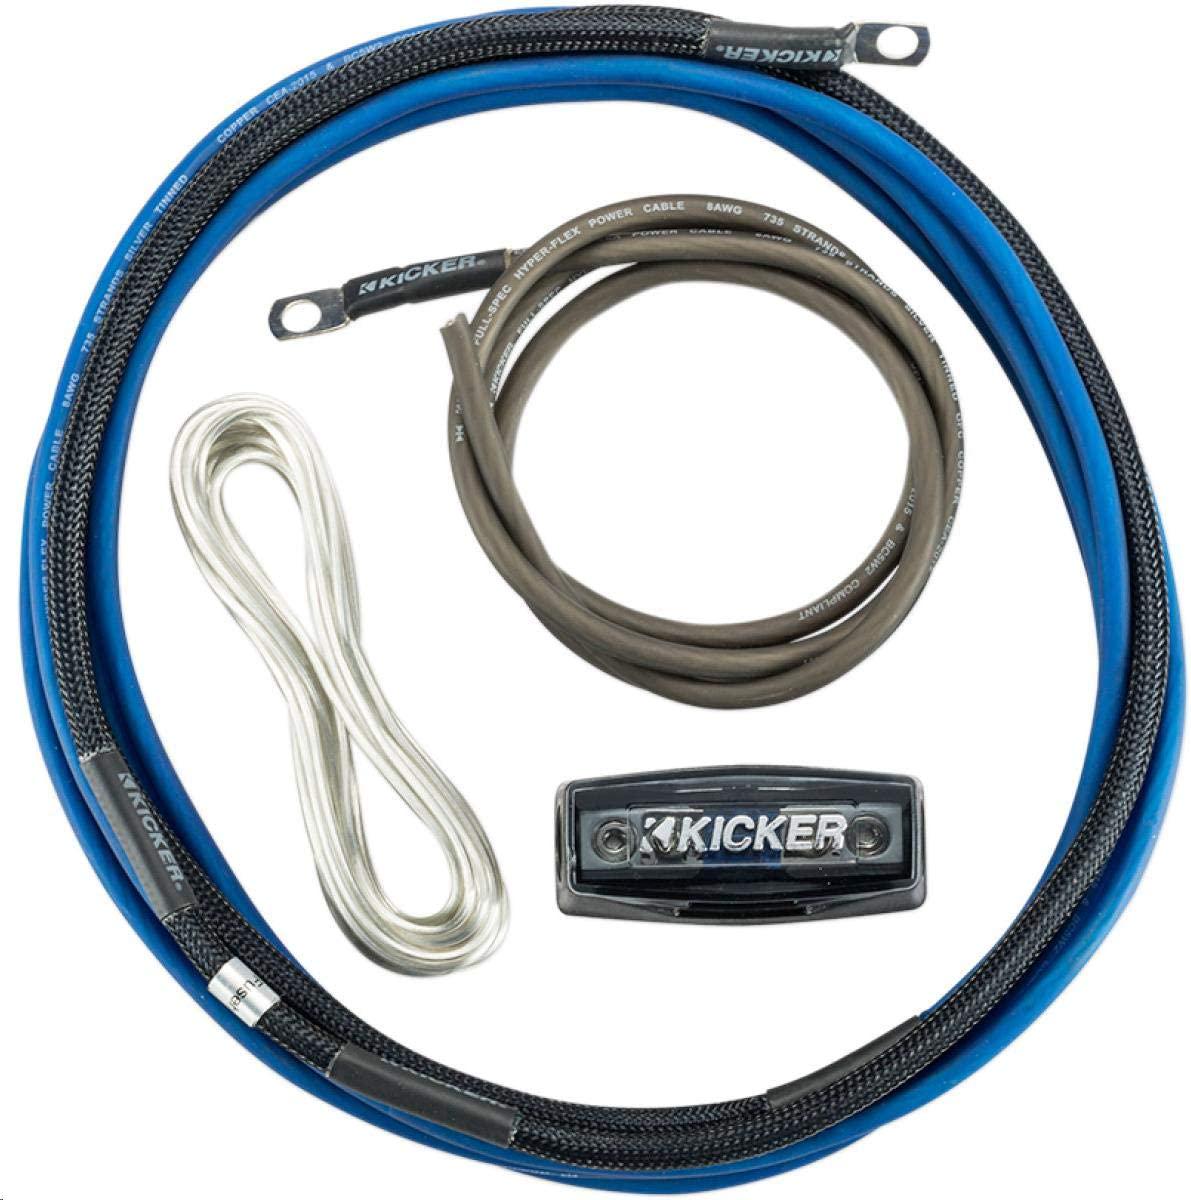 Kicker, Kicker 46PK8 8AWG/8 Gauge 2-Channel Amplifier Power Wiring Kit